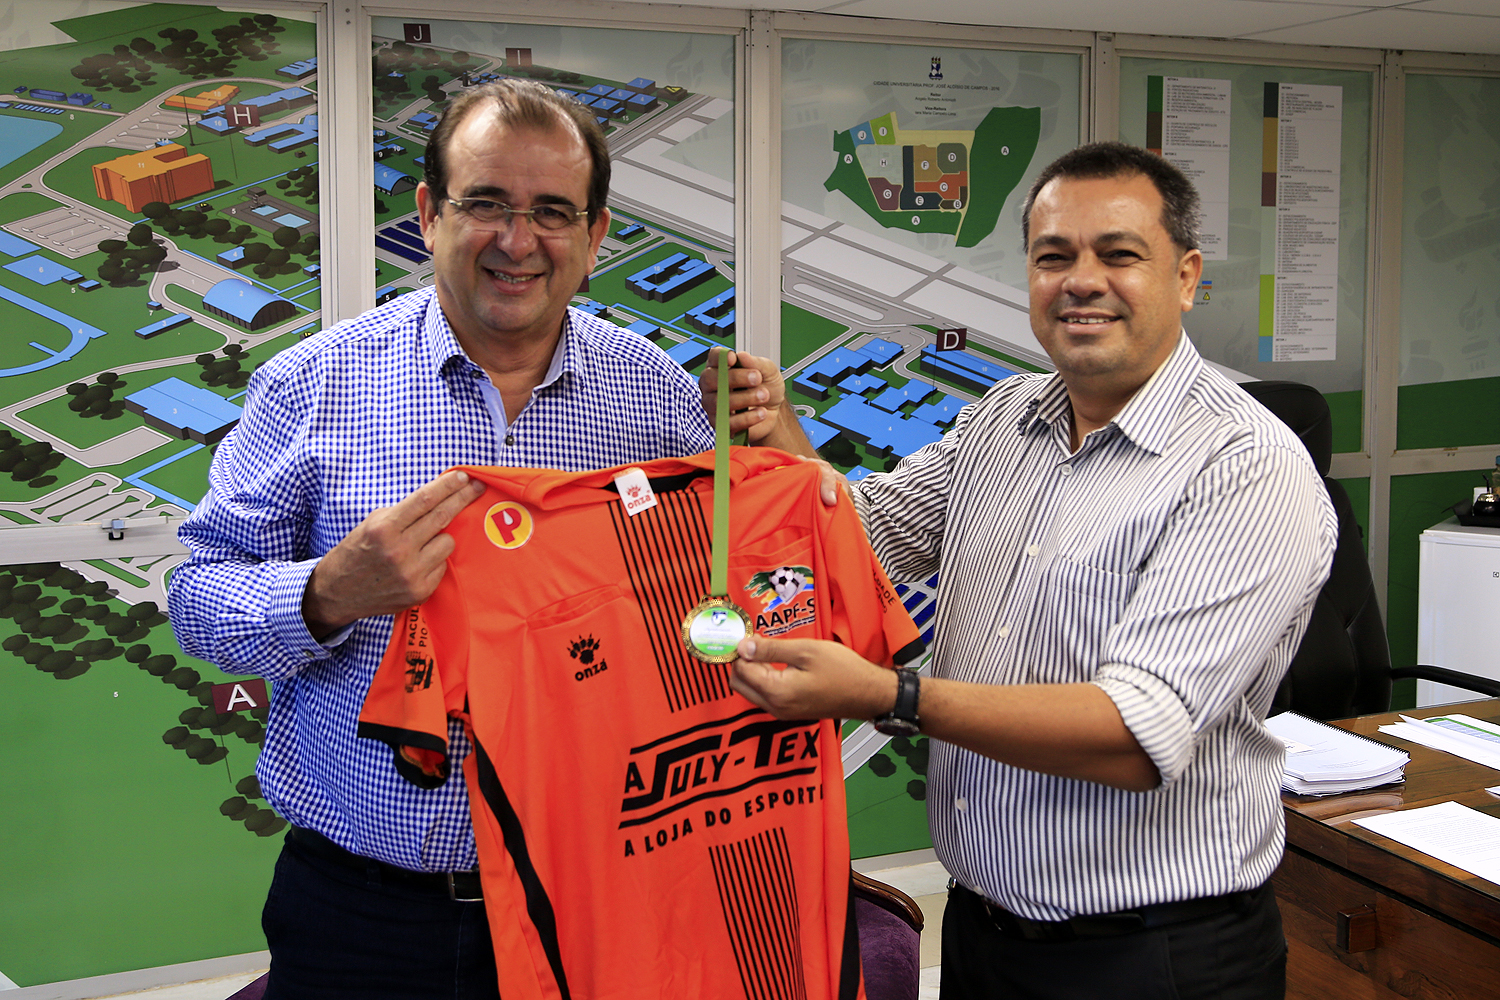 Reitor Angelo Antoniolli recebeu Ivanei Lima, presidente da AAPF , que agradeceu a disponibilidade da pista de atletismo da UFS para o treinamento da escola de arbitragem de Sergipe